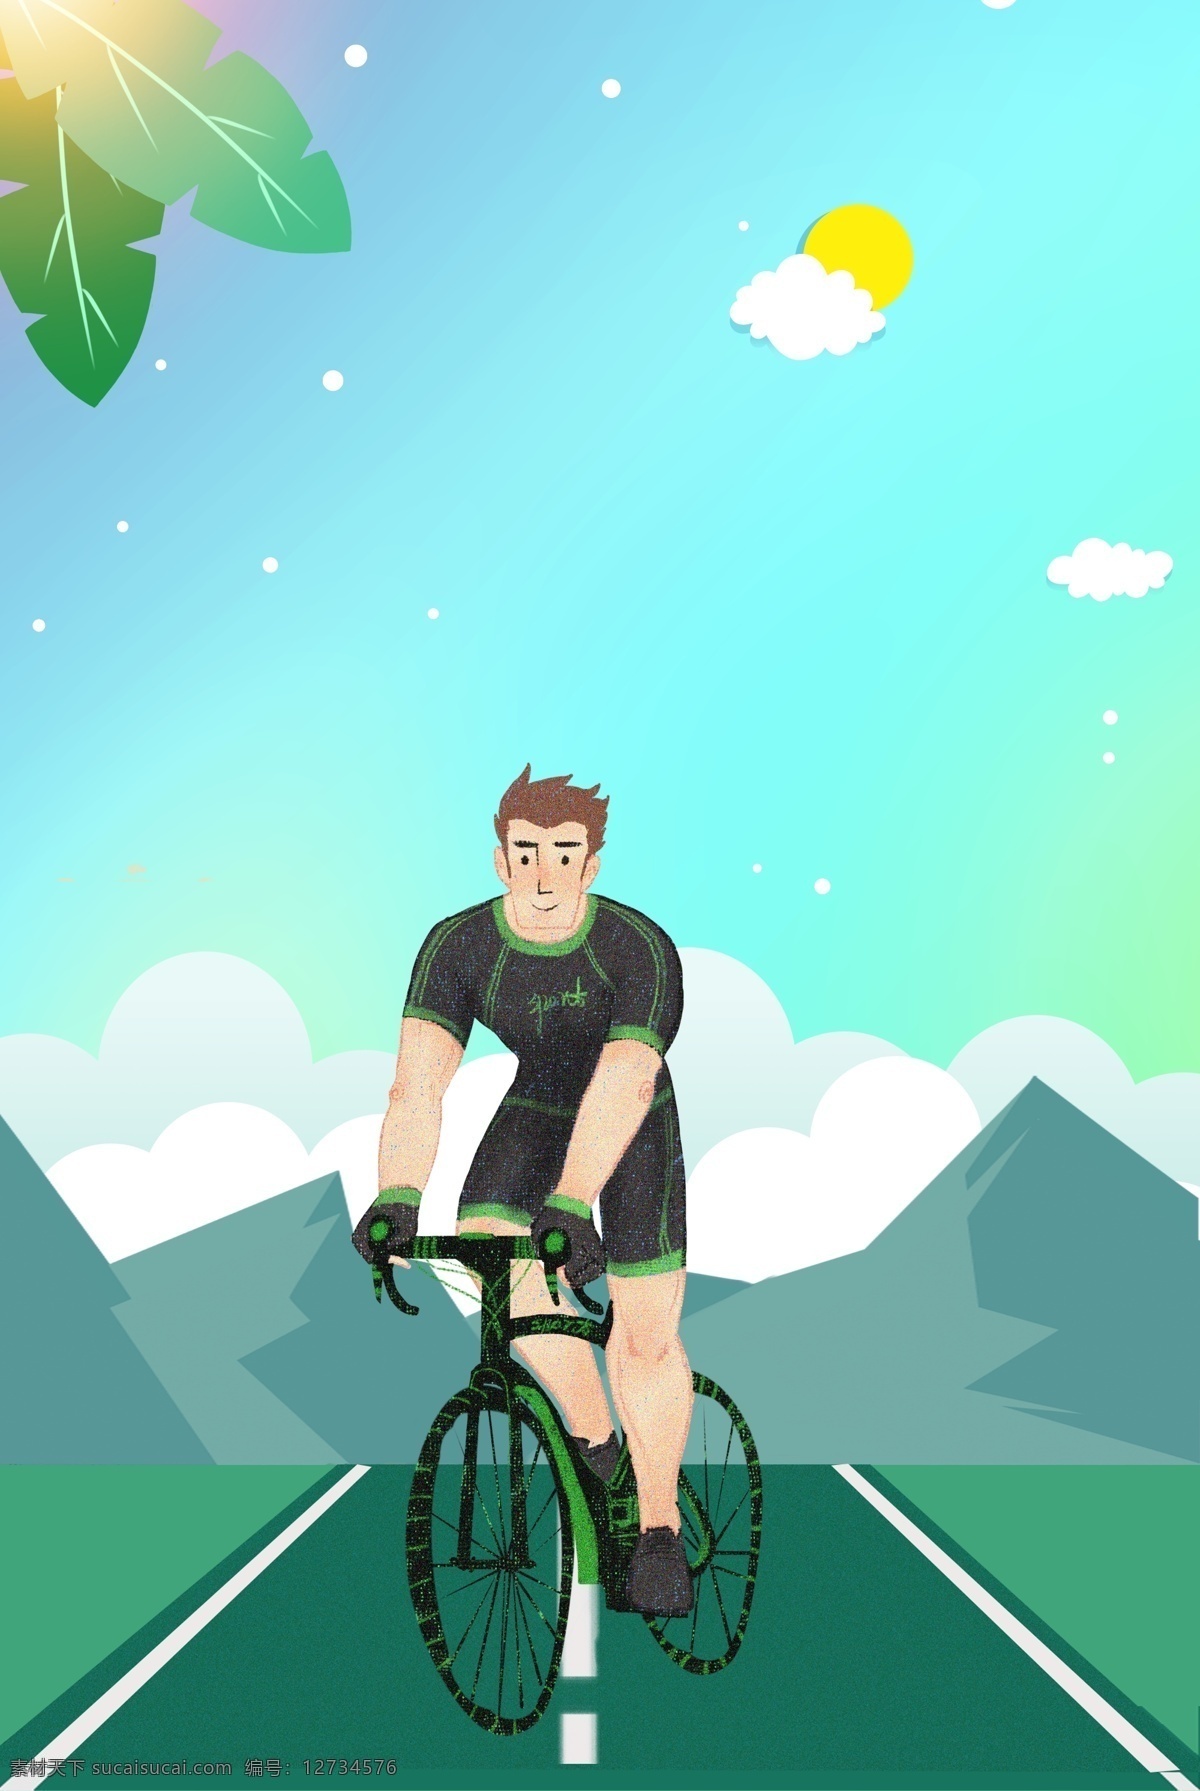 自行车 单车 运动 海报 骑自行车 户外运动 自助游 脚踏车 节能减排 绿色出行 骑单车